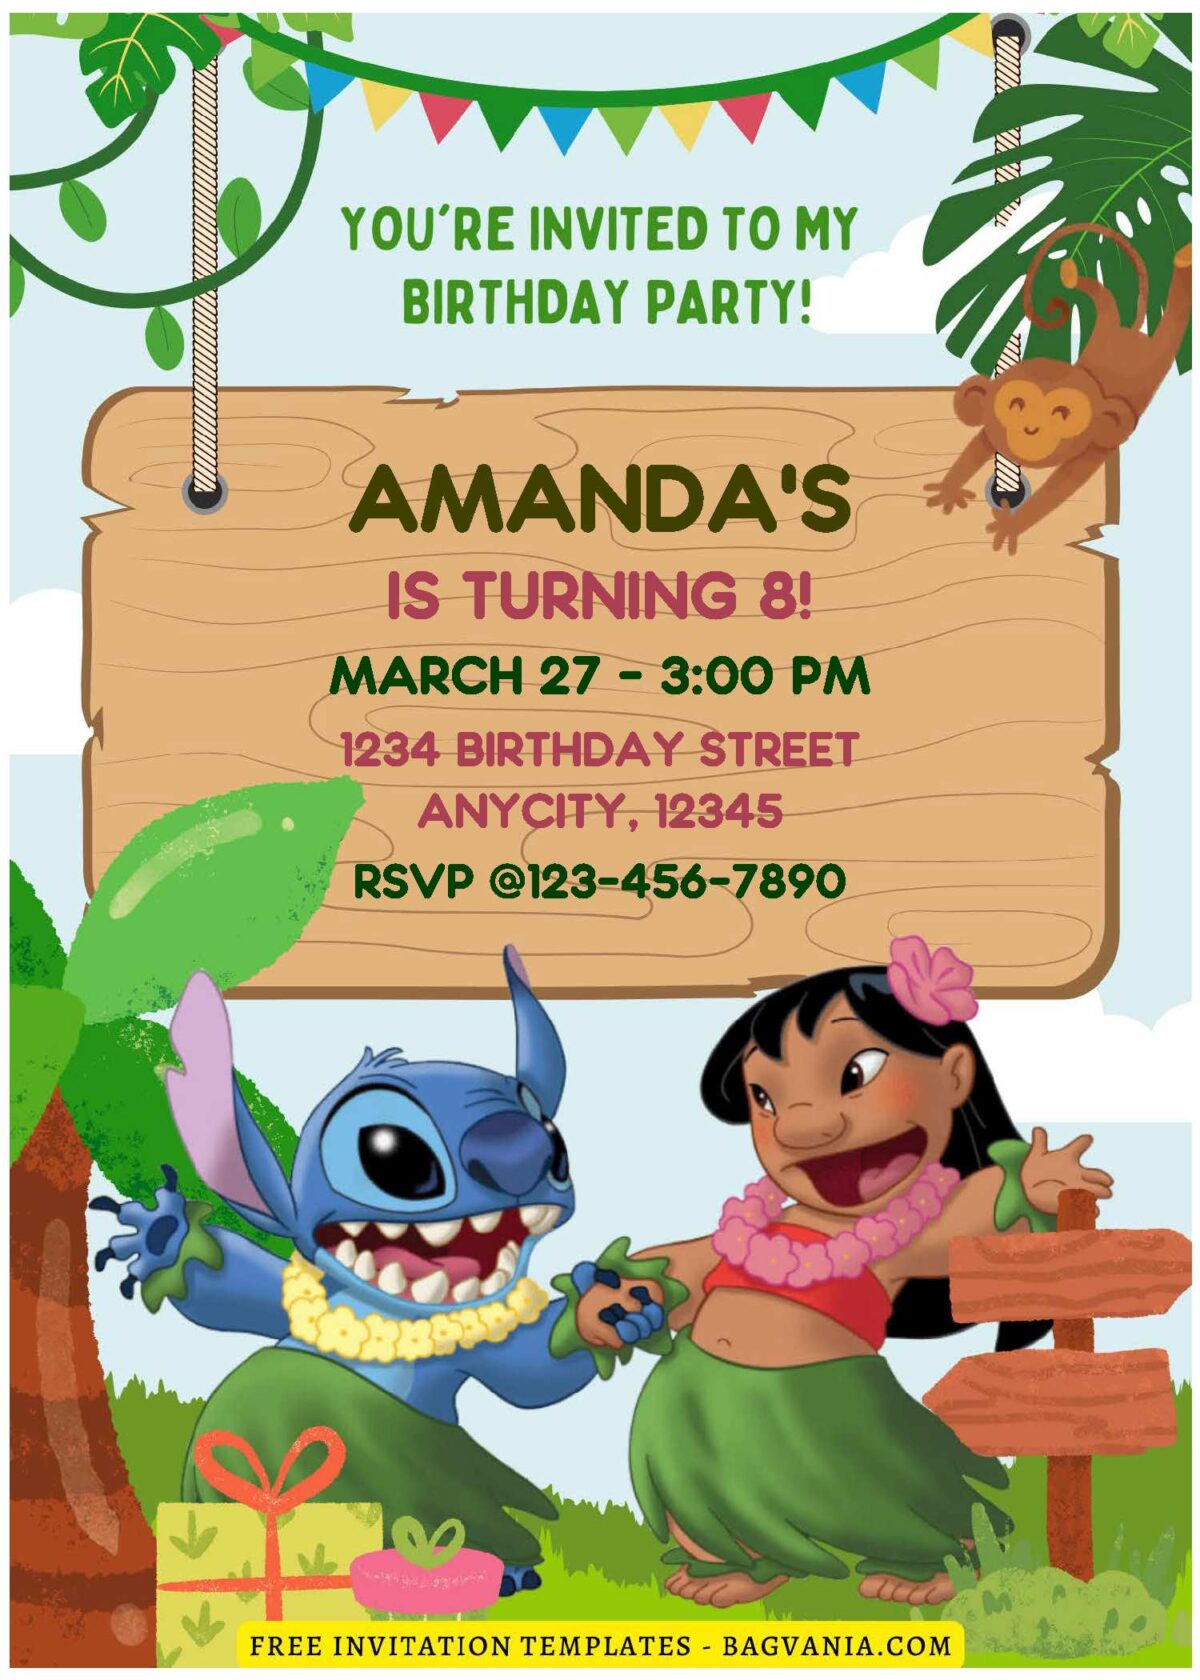 (Free Editable PDF) Jungle Bash Lilo & Stitch Birthday Invitation Templates E